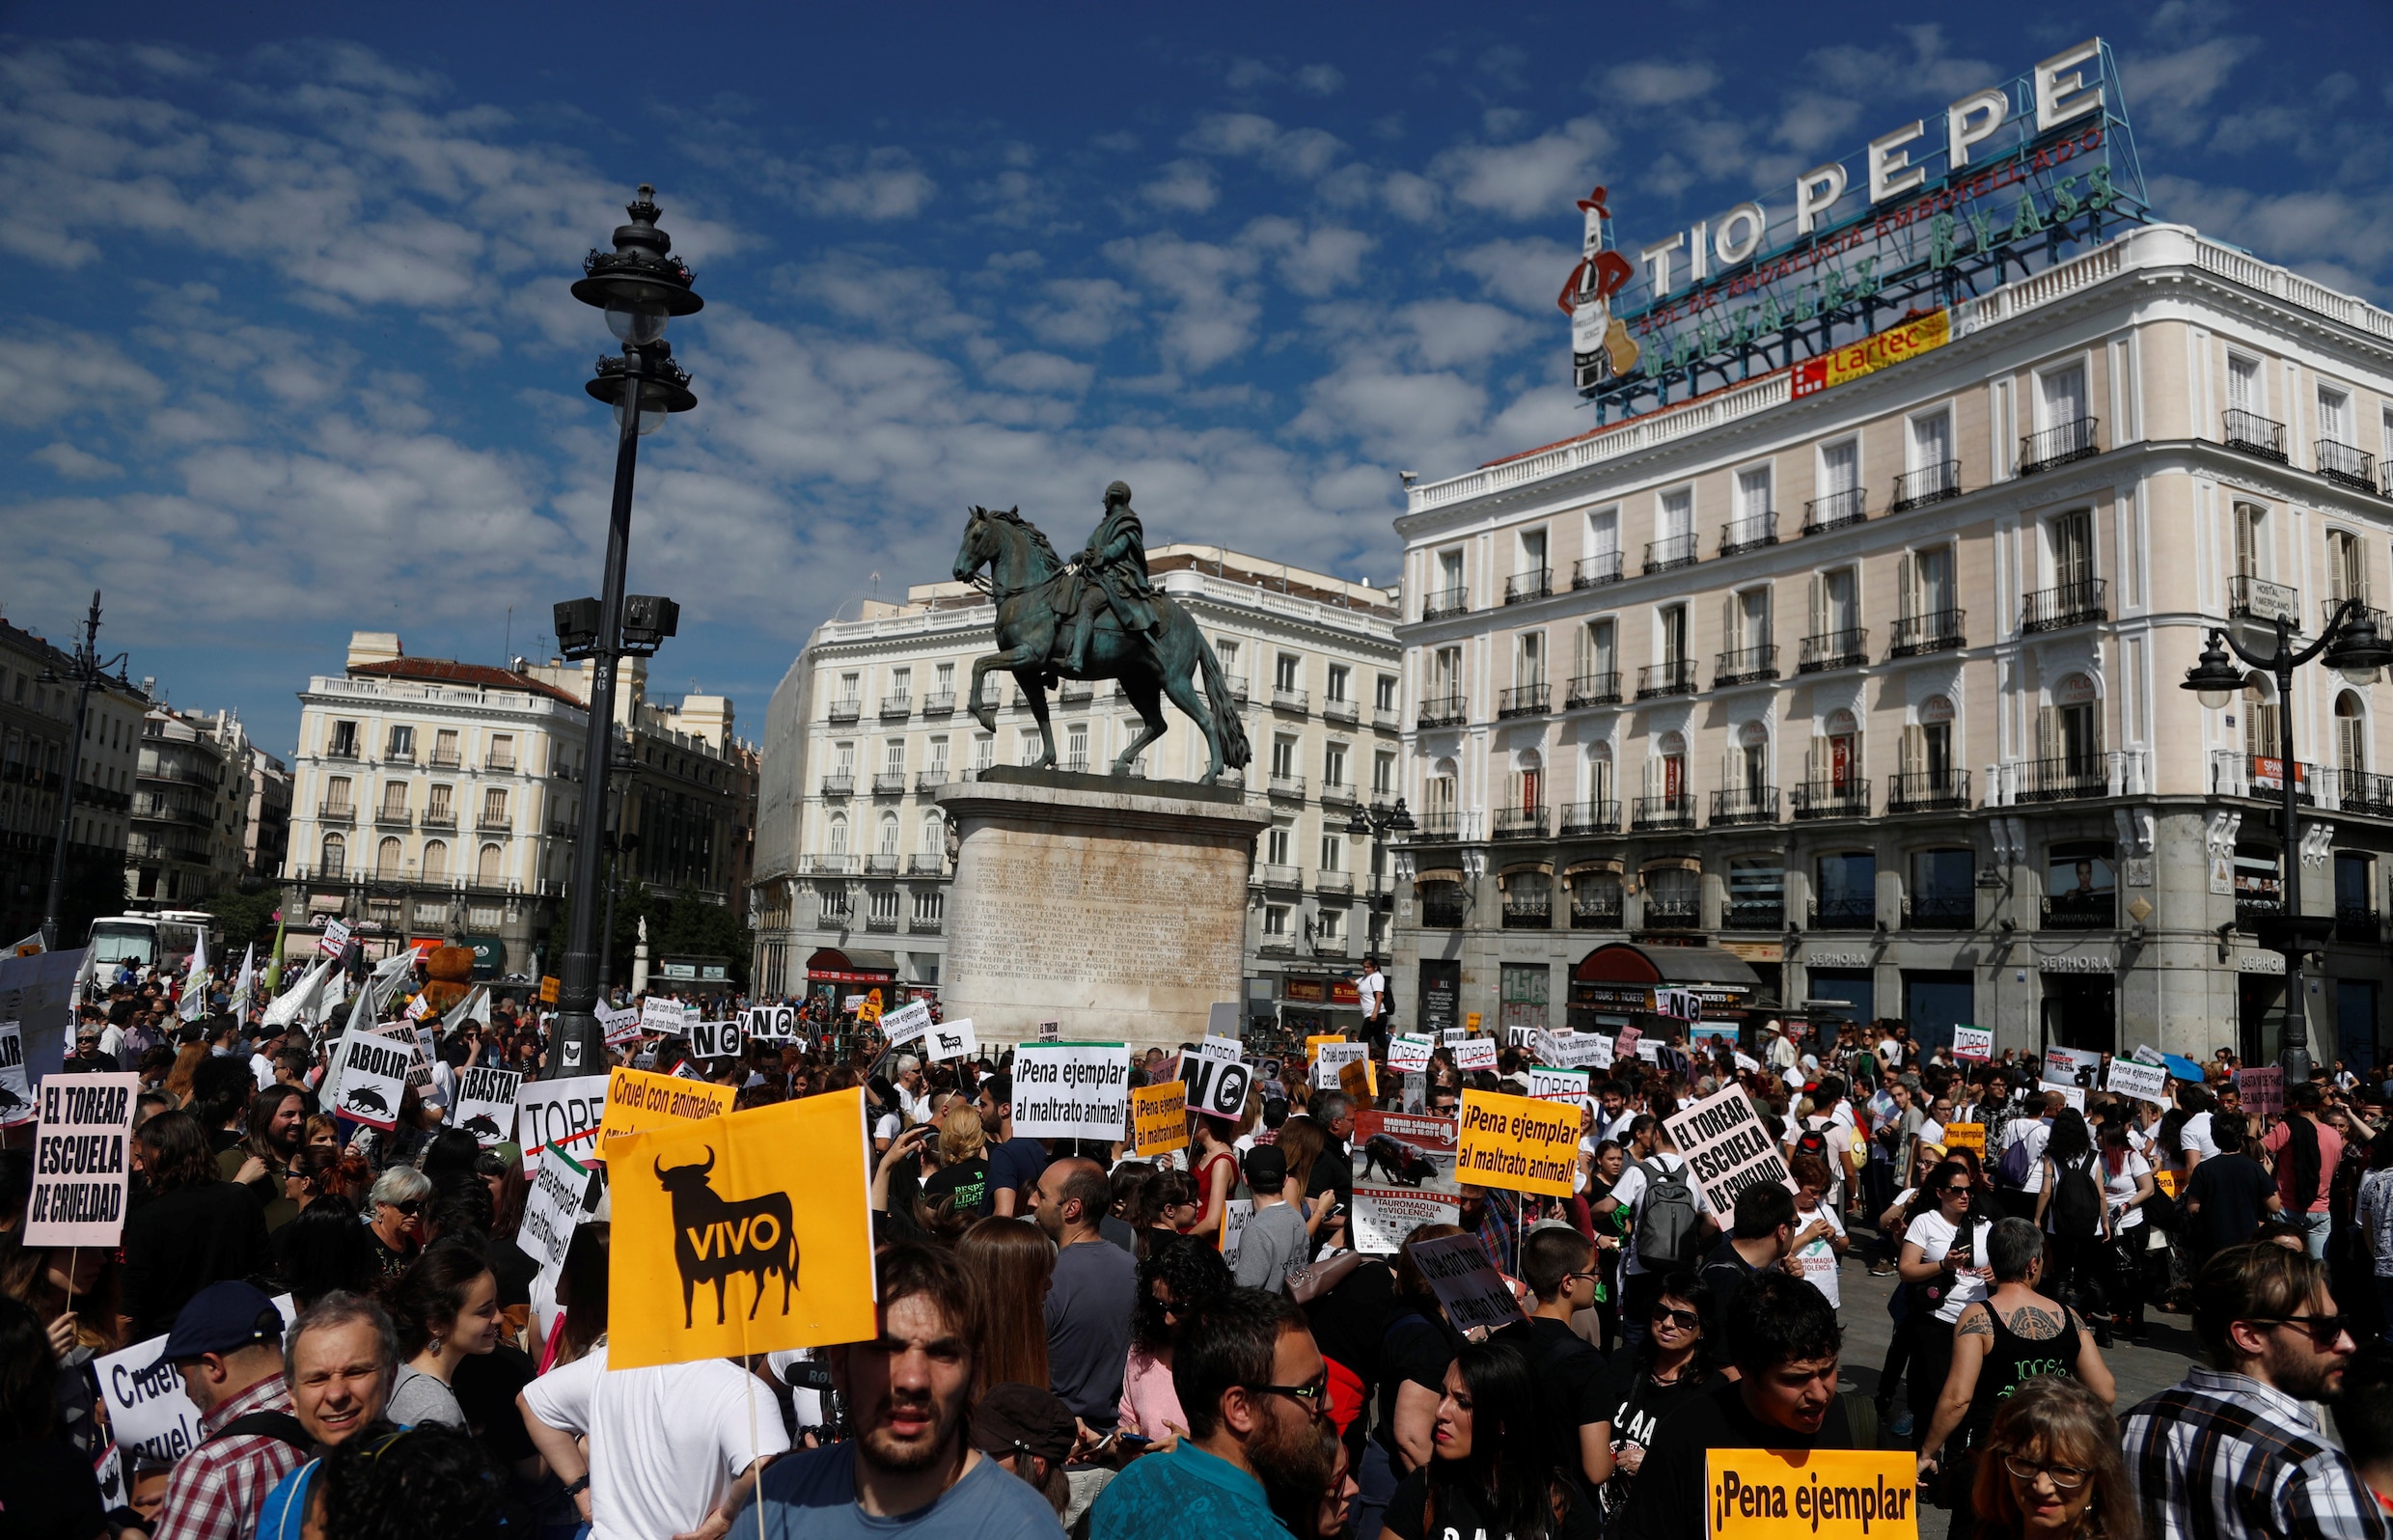 Tienduizenden betogen in Spanje voor afschaffing van stierengevechten: "Een schande!"